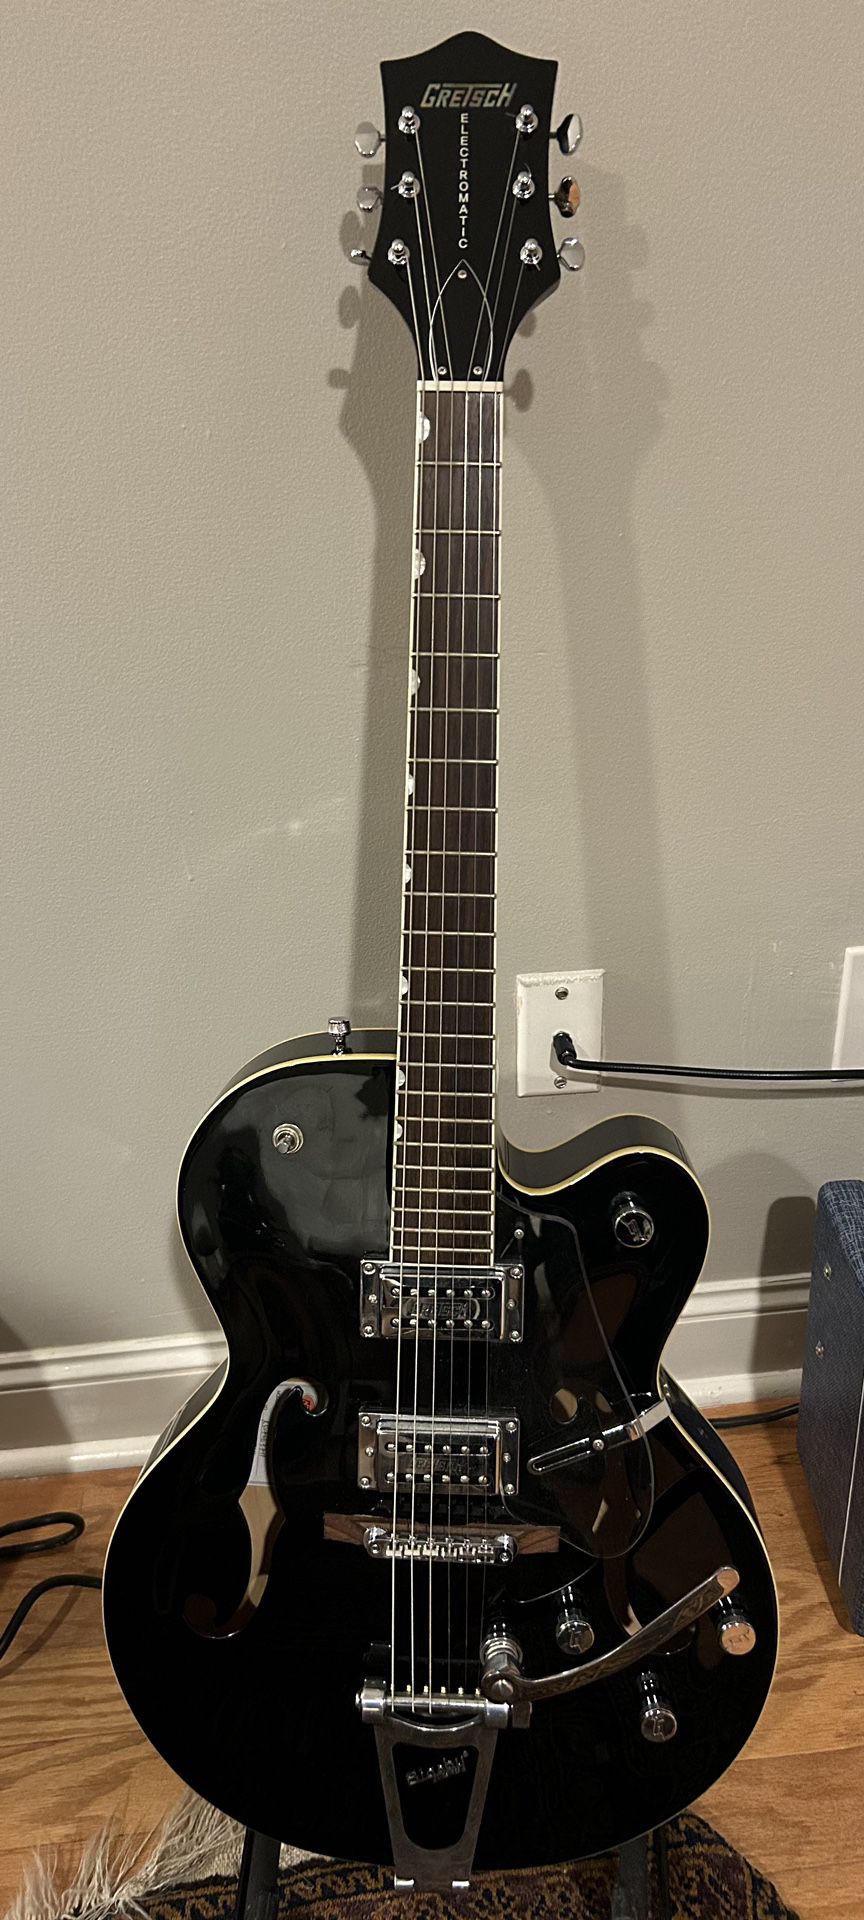 Gretsch G5120 Black Guitar Bigsby Hard Case